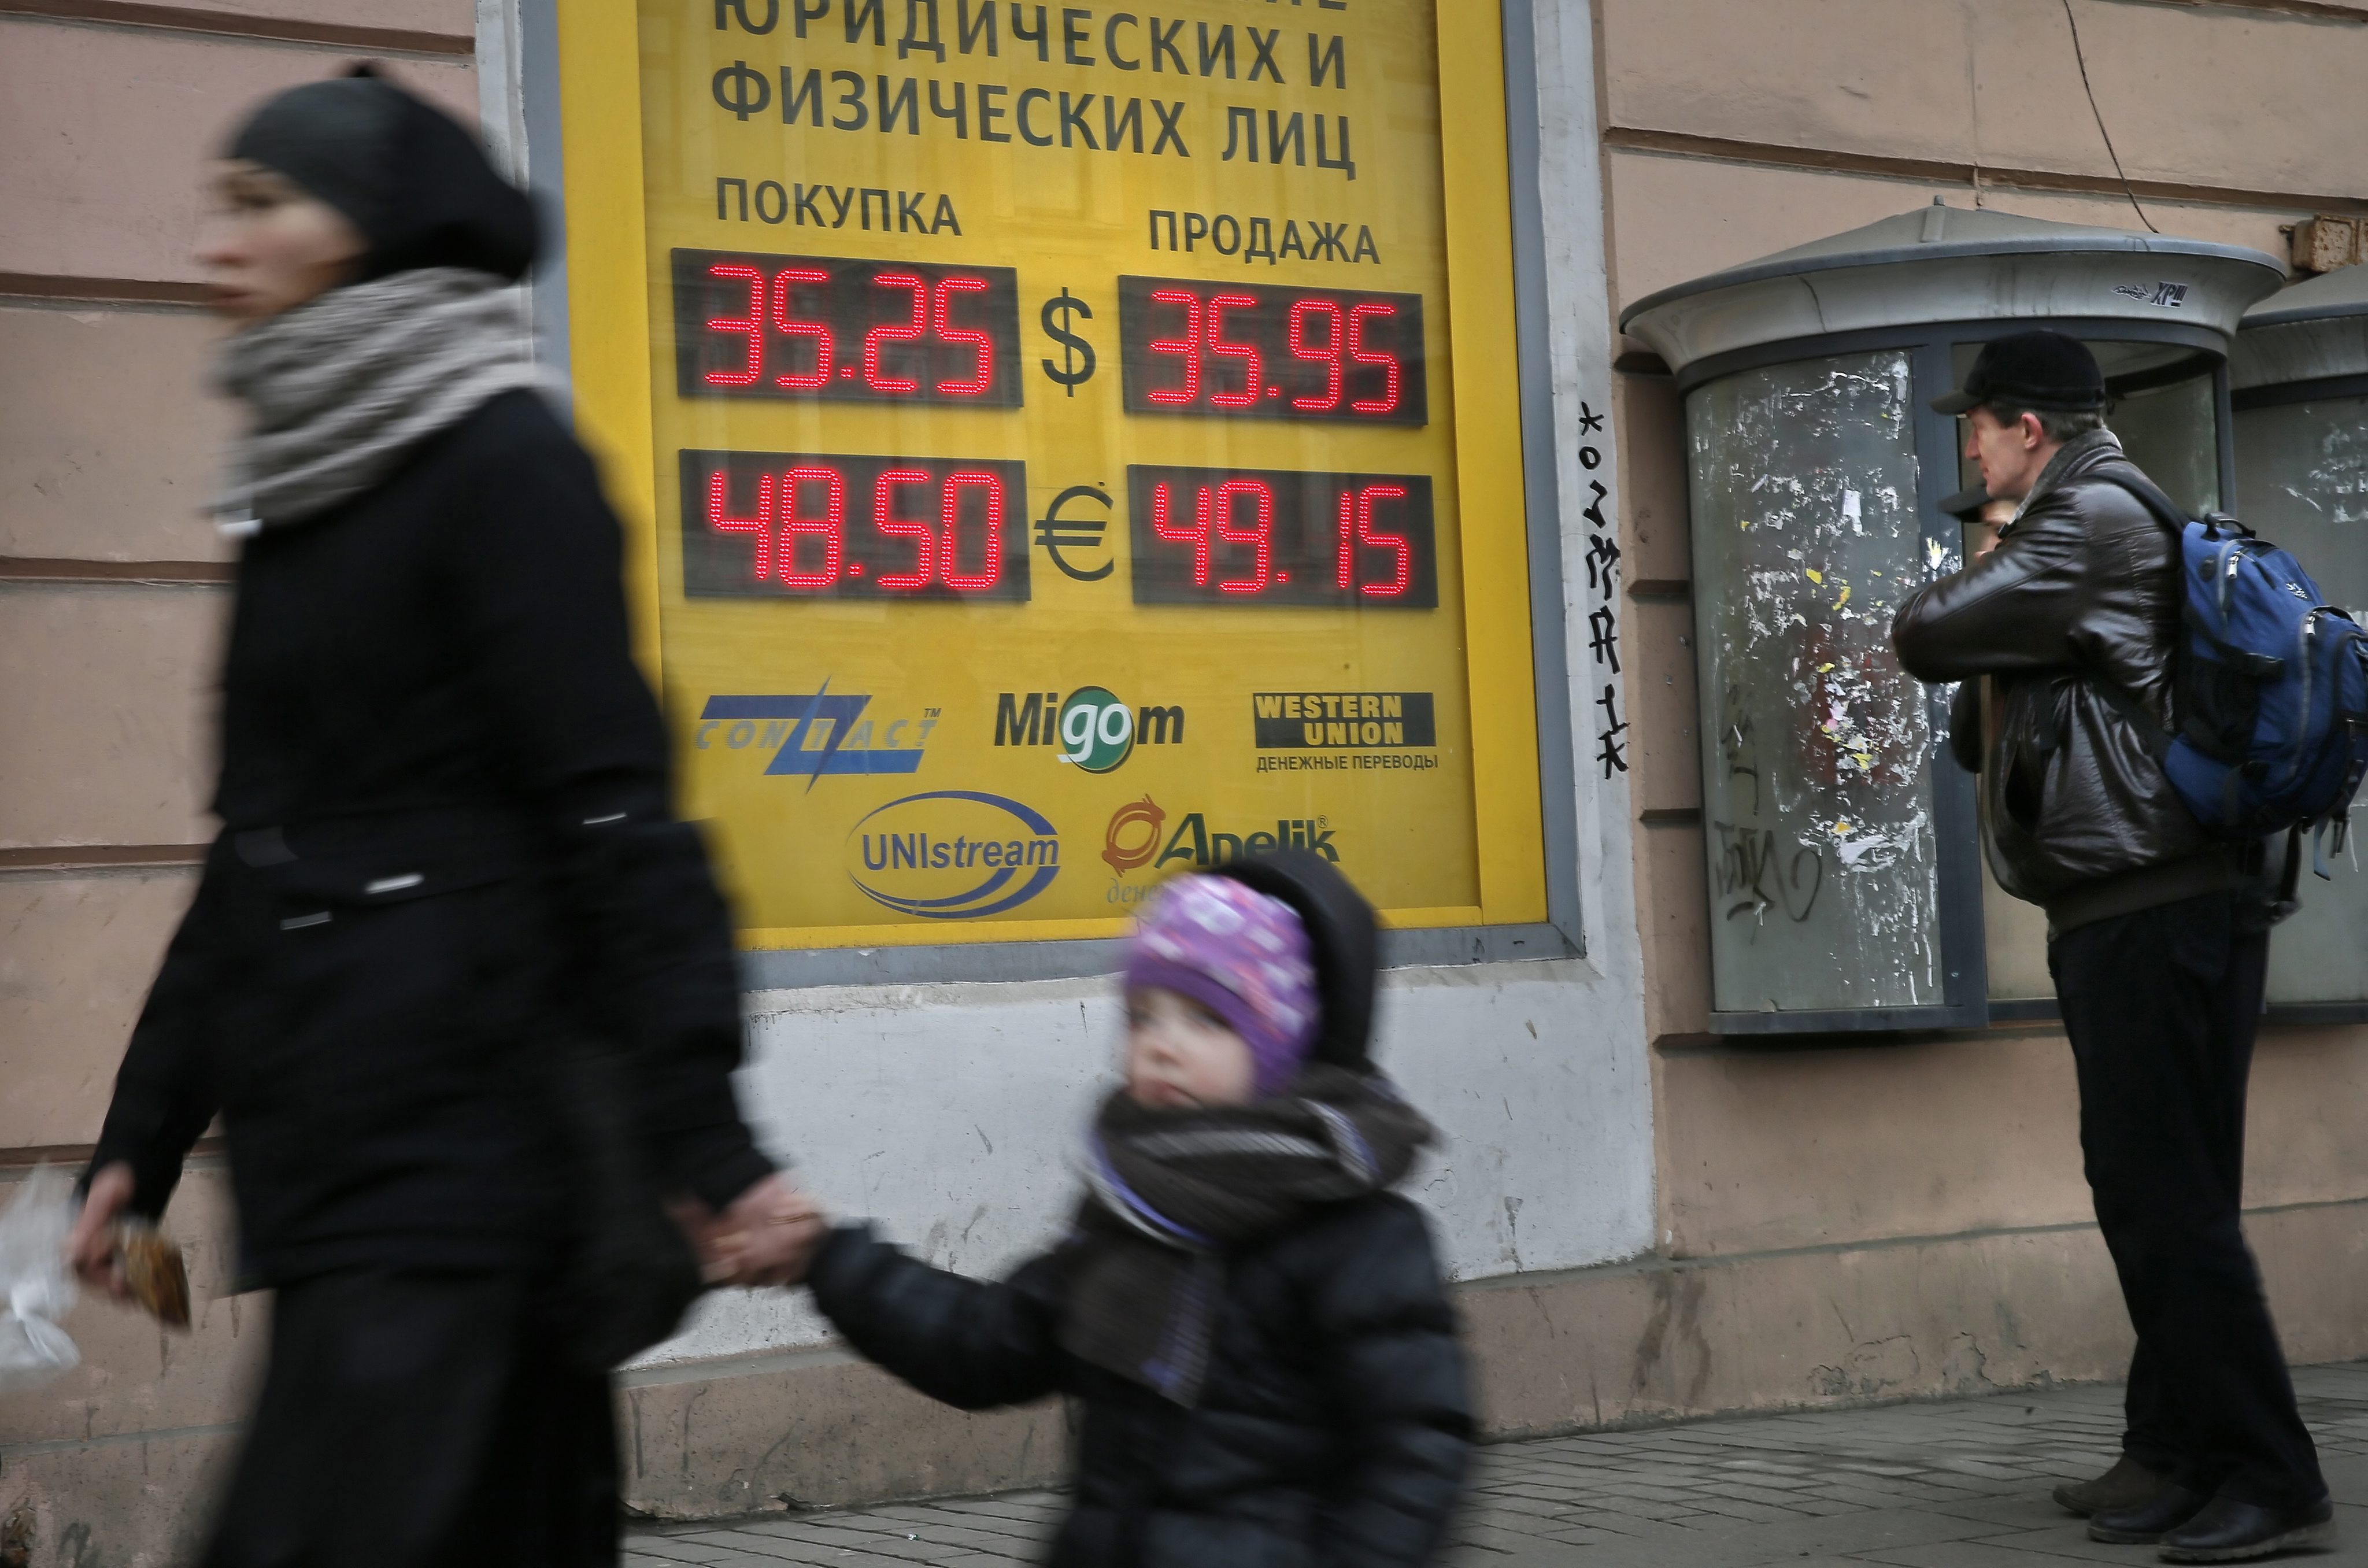 Σε κρίση η οικονομία της Ρωσίας, δηλώνει ο αρμόδιος υφυπουργός